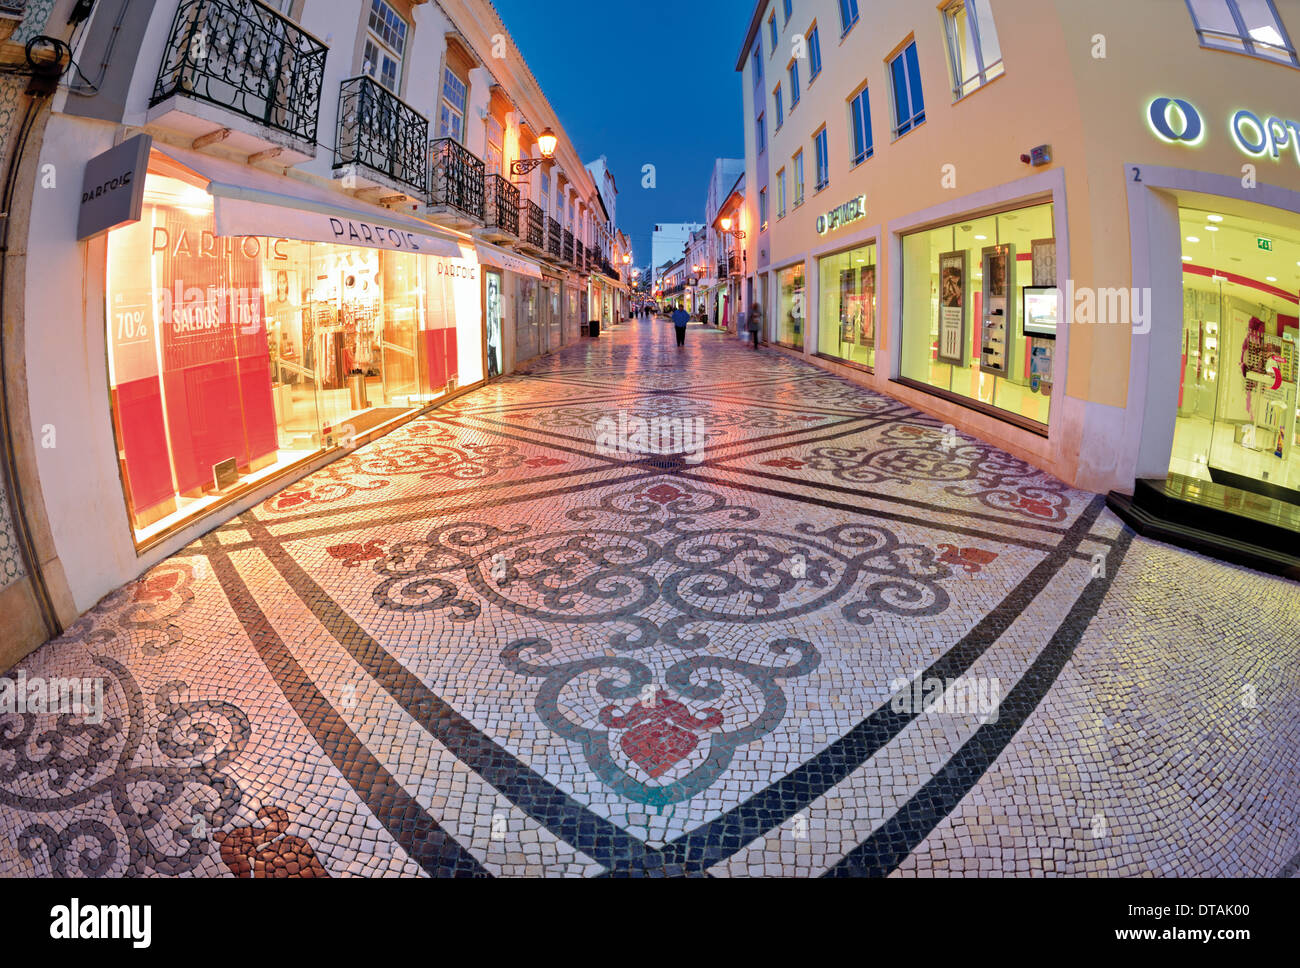 Portugal, Algarve: Typisch portugiesischen gepflasterte Straße im historischen Zentrum von Faro Stockfoto